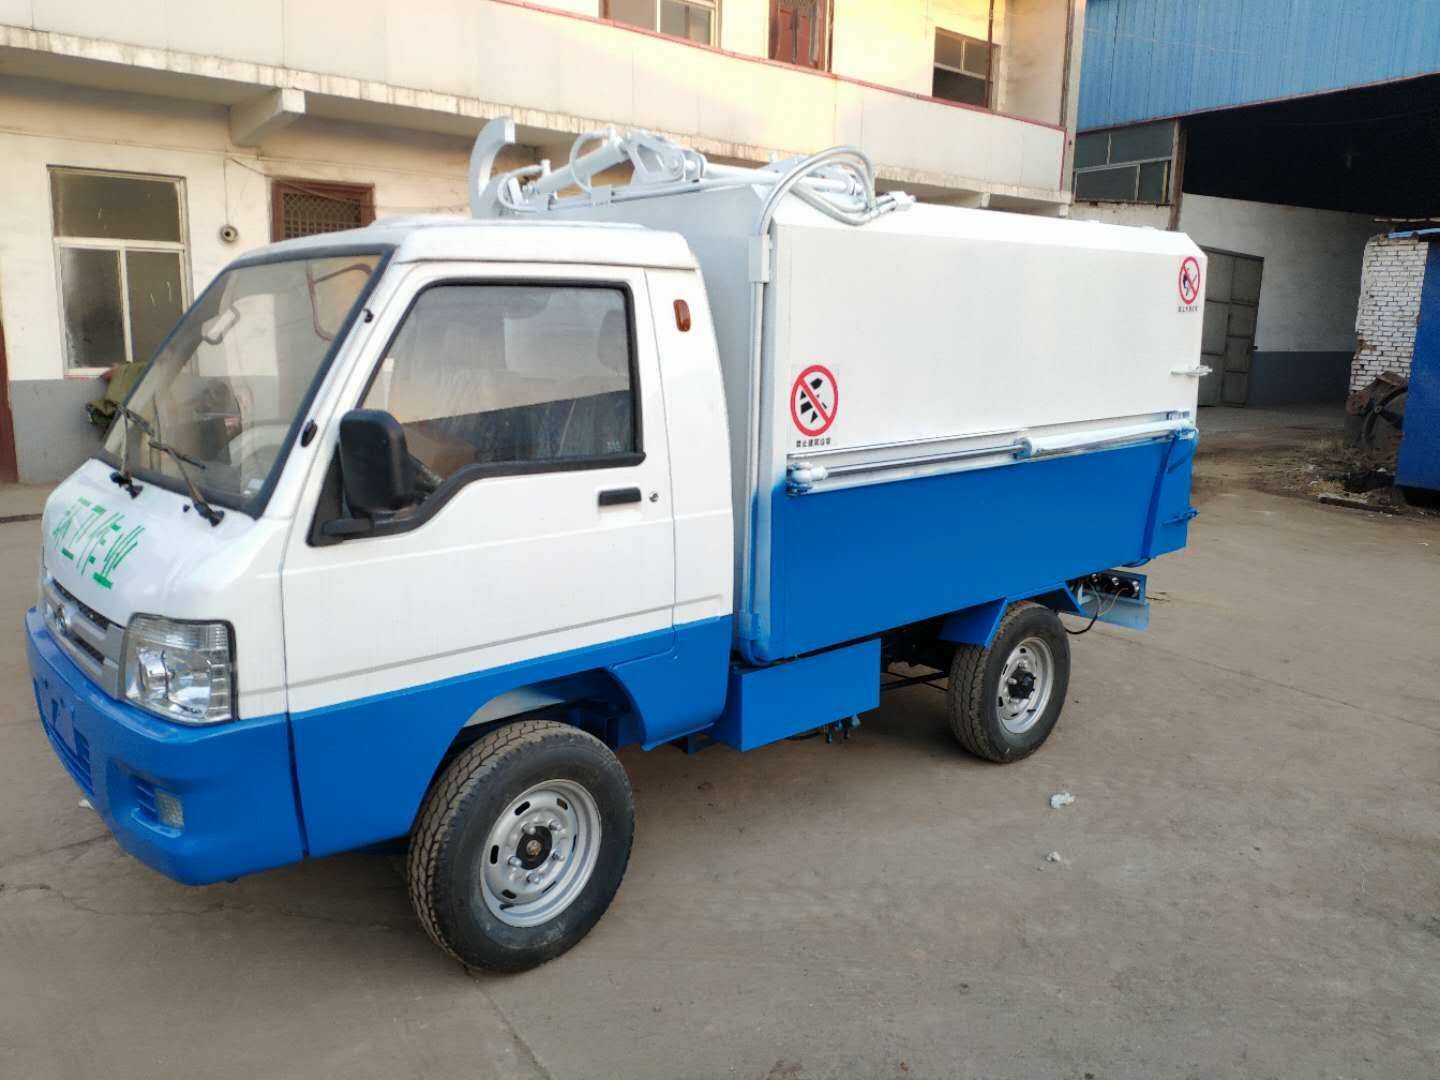 重庆新能源垃圾车-电动三轮垃圾车现货供应